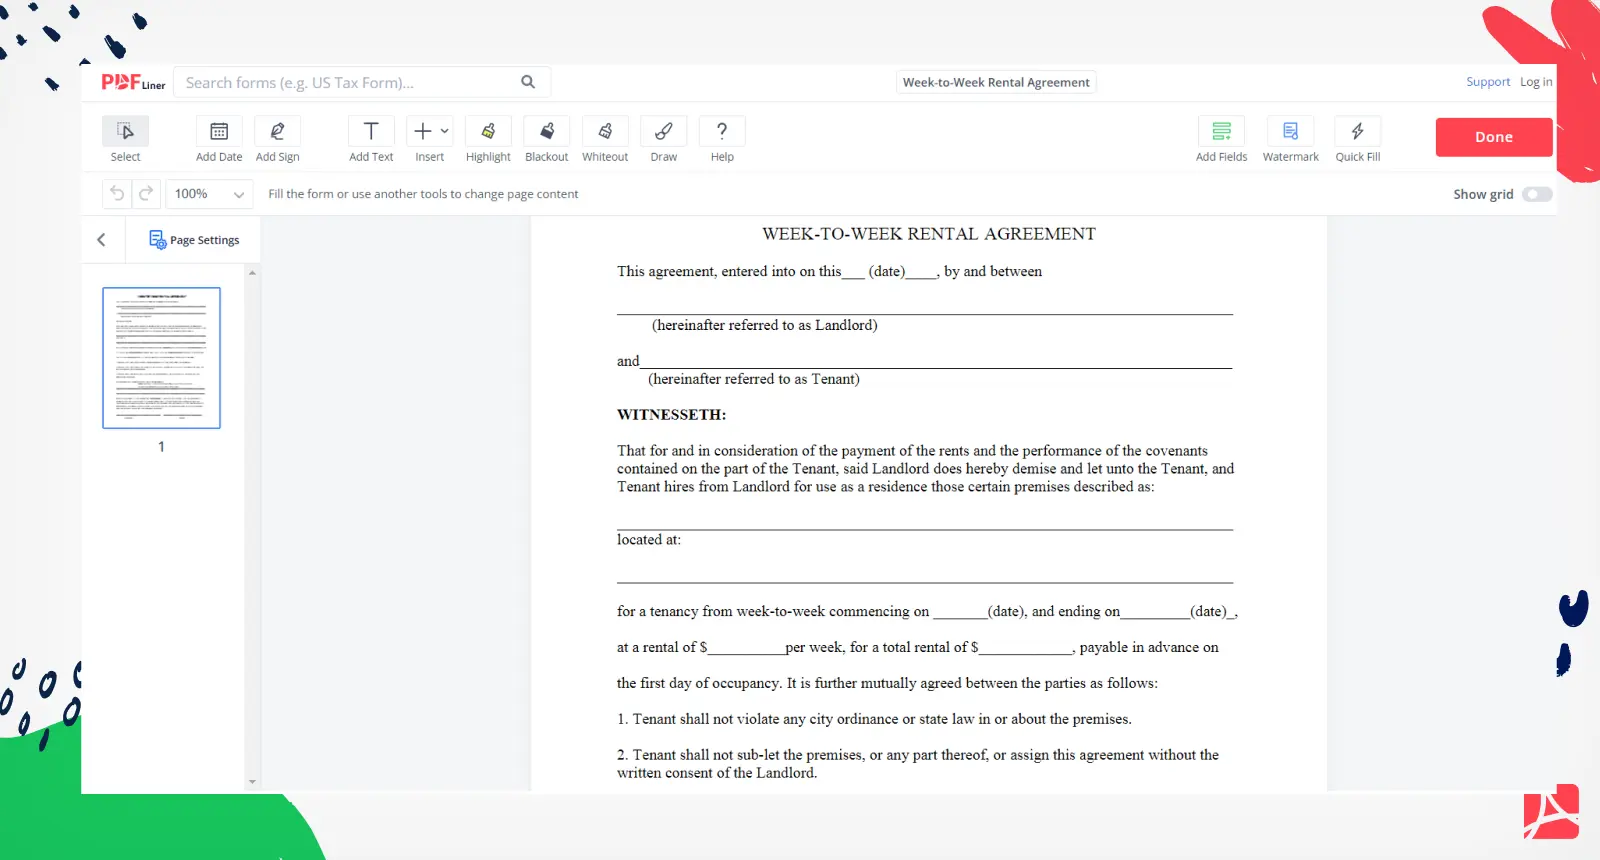 Week-to-Week Rental Agreement Form Screenshot